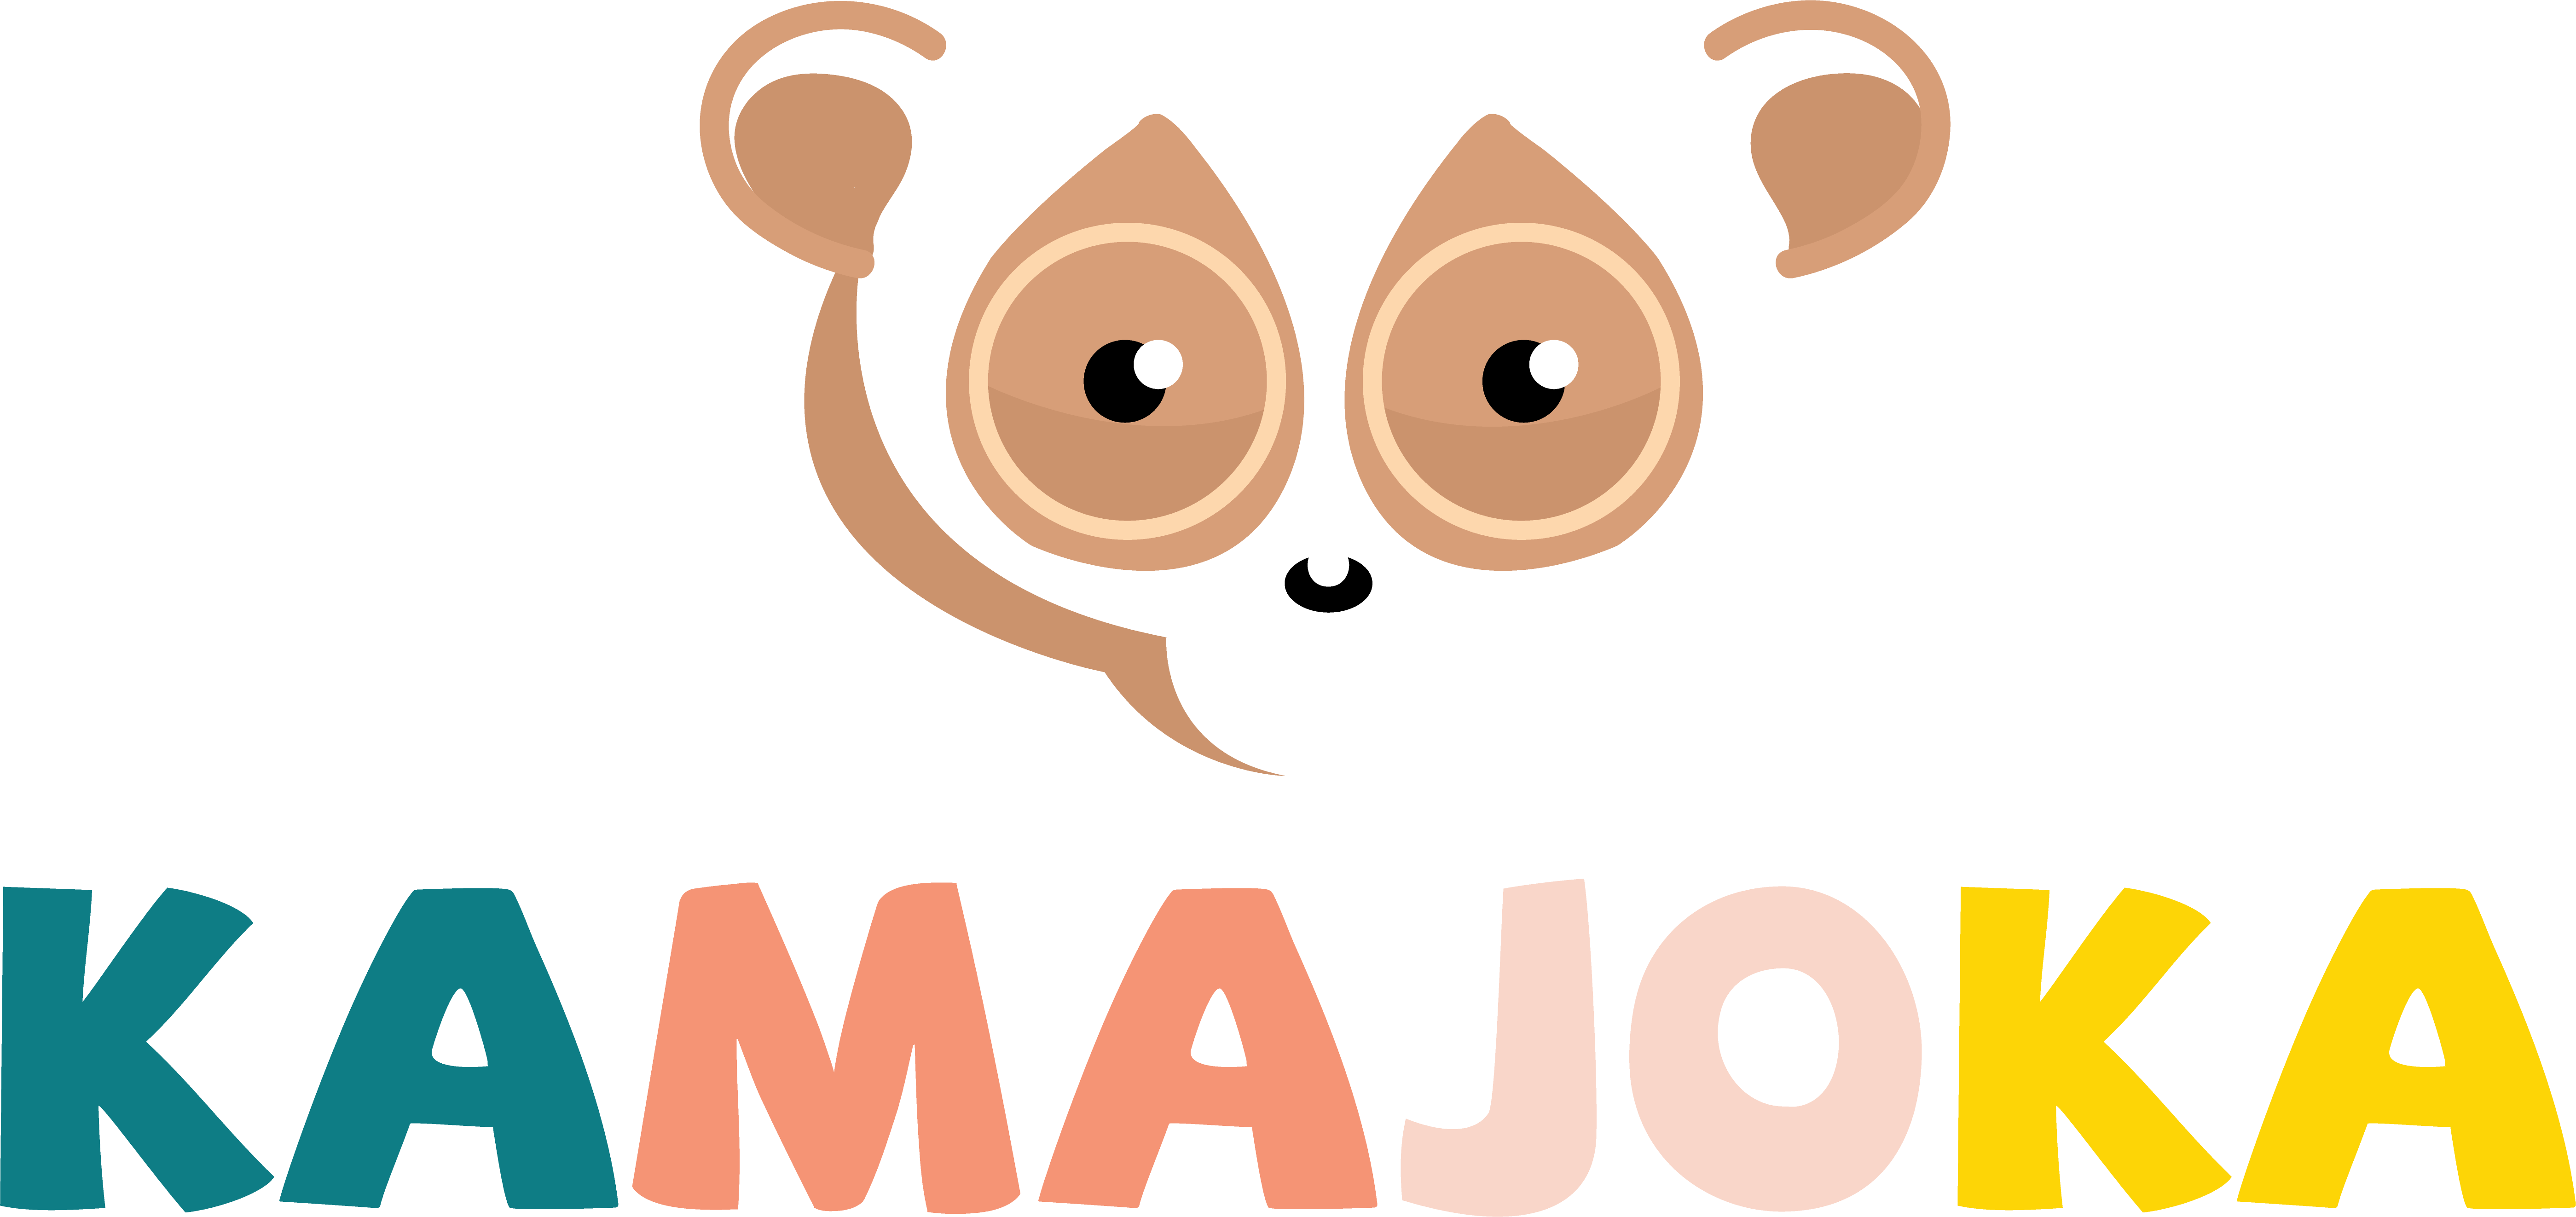 Kamajoka logo